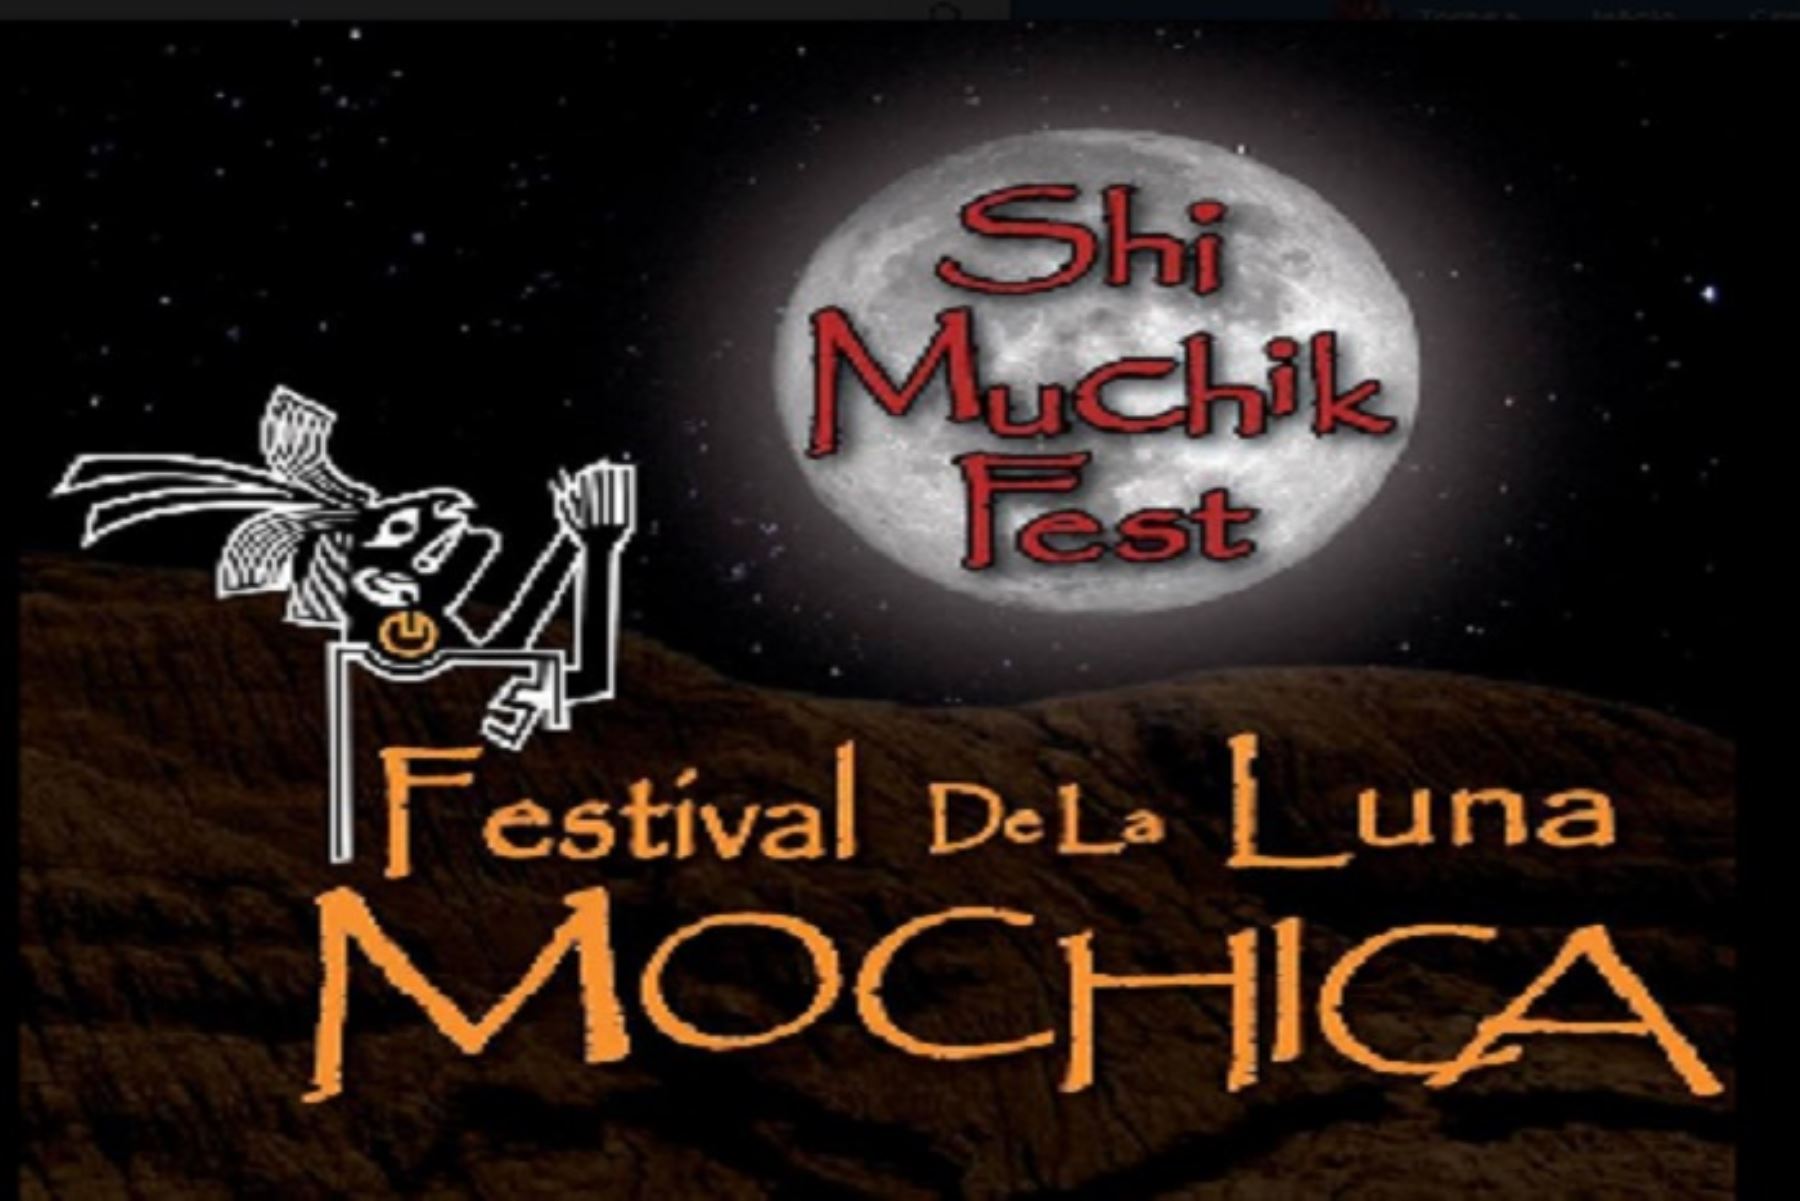 El VIII Shi Muchik Fest (Festival de la Luna Mochica), mega evento deportivo, cultural y de entretenimiento que se desarrolla desde el 2012 en la Ruta Moche, incluirá esta vez a Piura, dentro de la actividades programadas del 29 de agosto al 8 de setiembre.